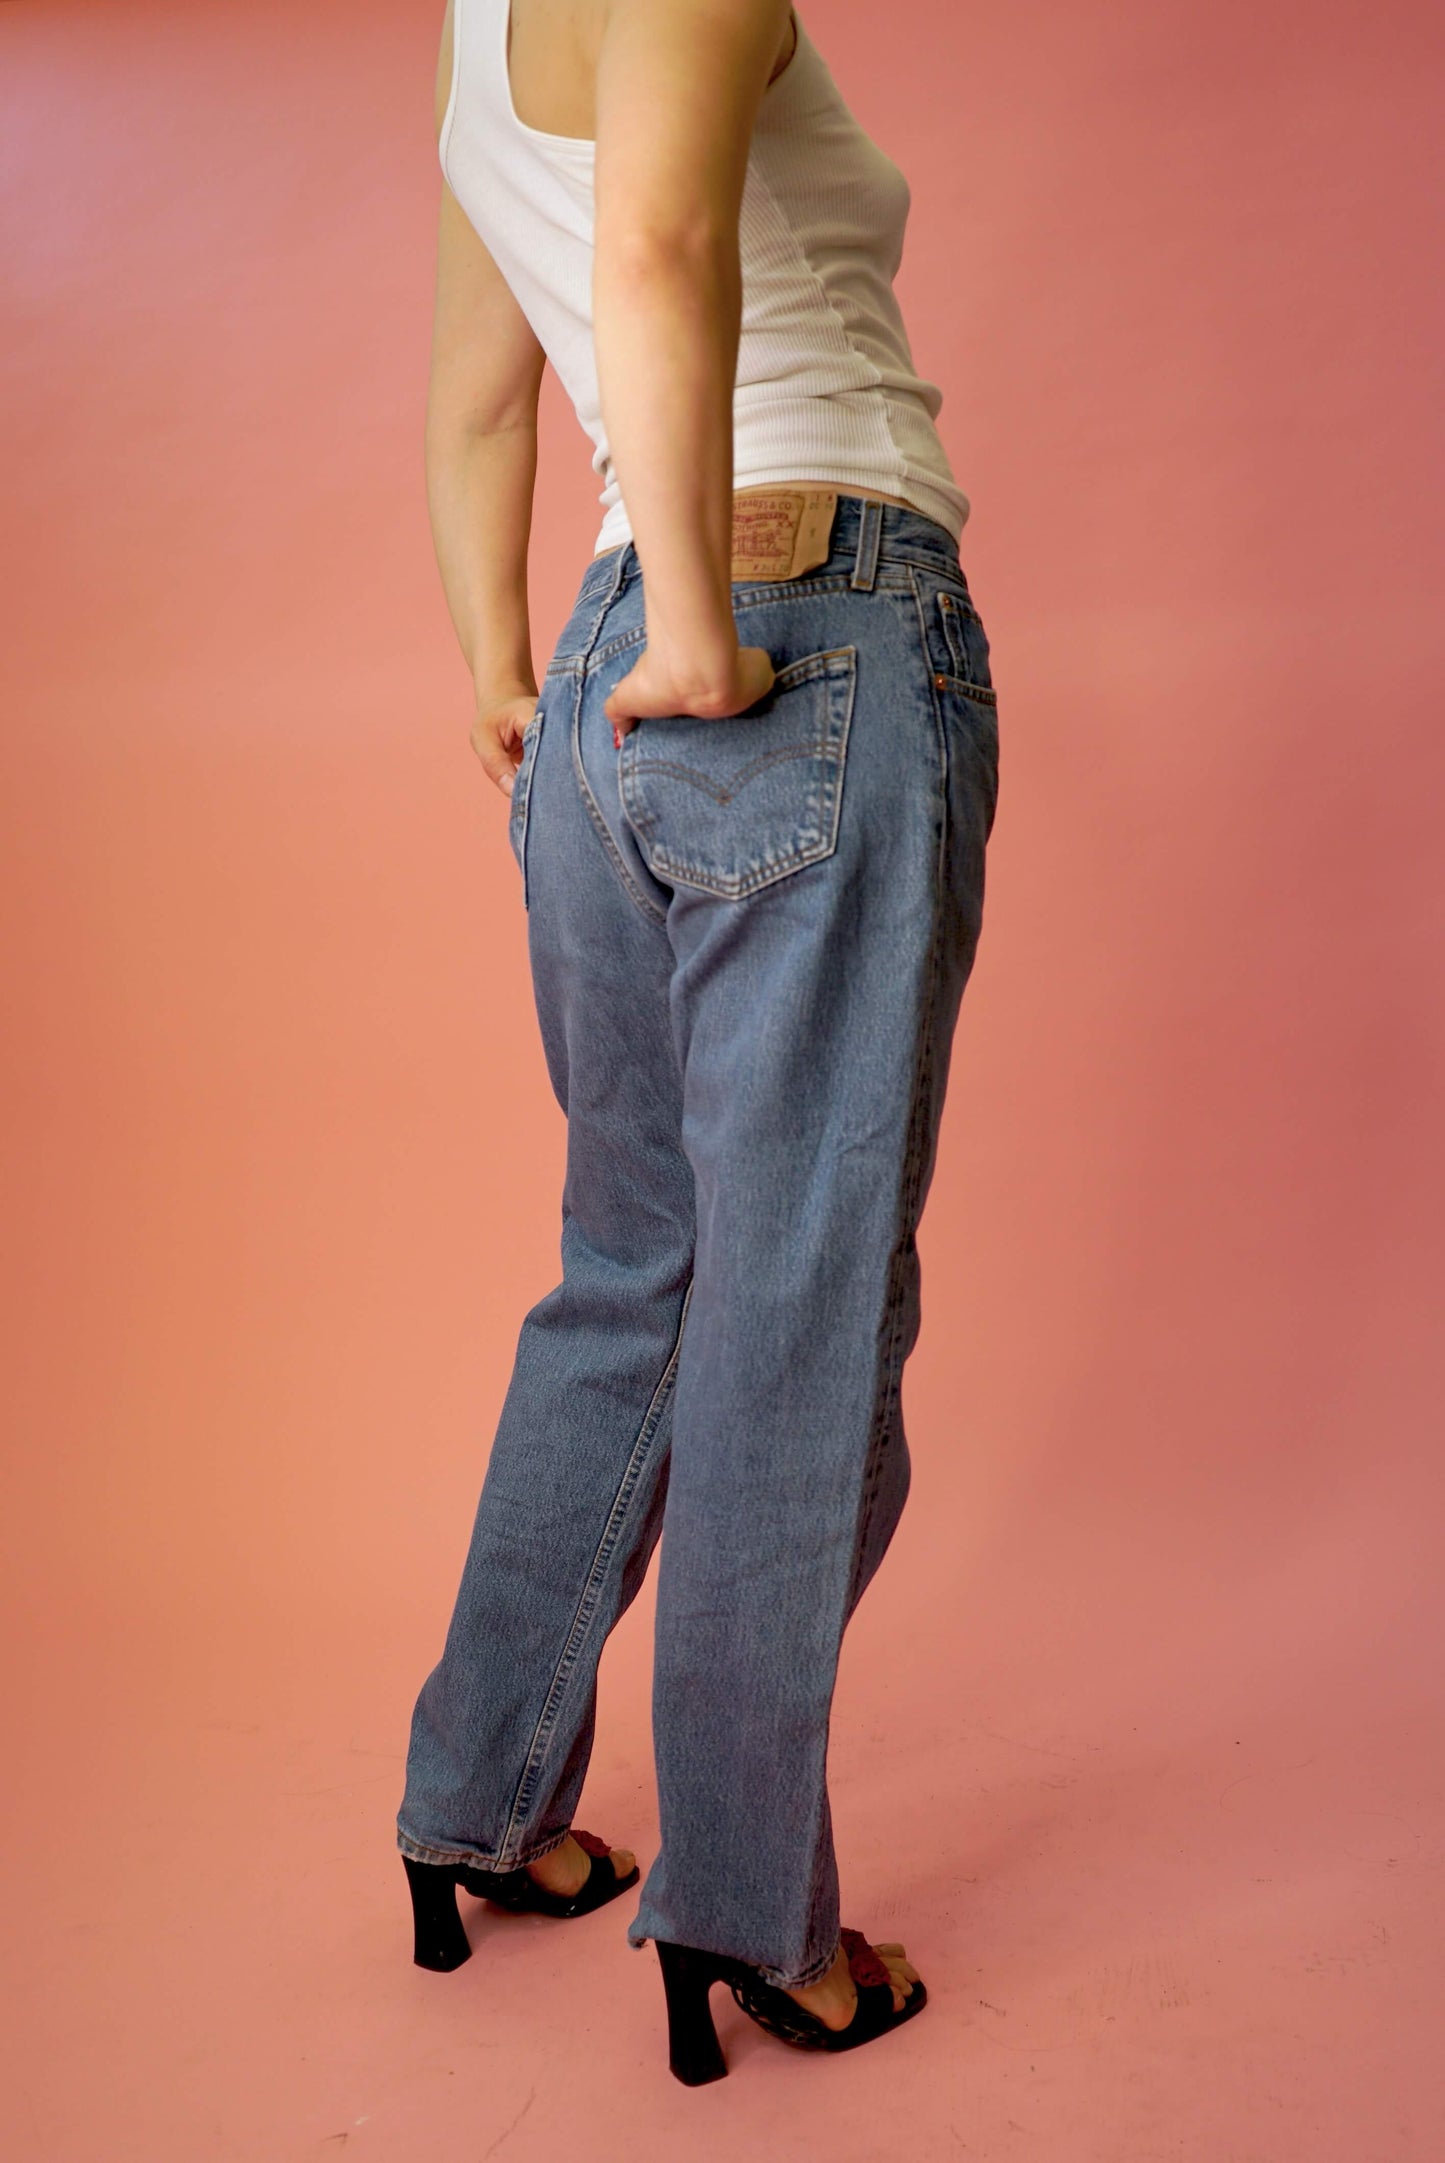 Vintage Levis 501 Jeans W33-34 Medium Blue